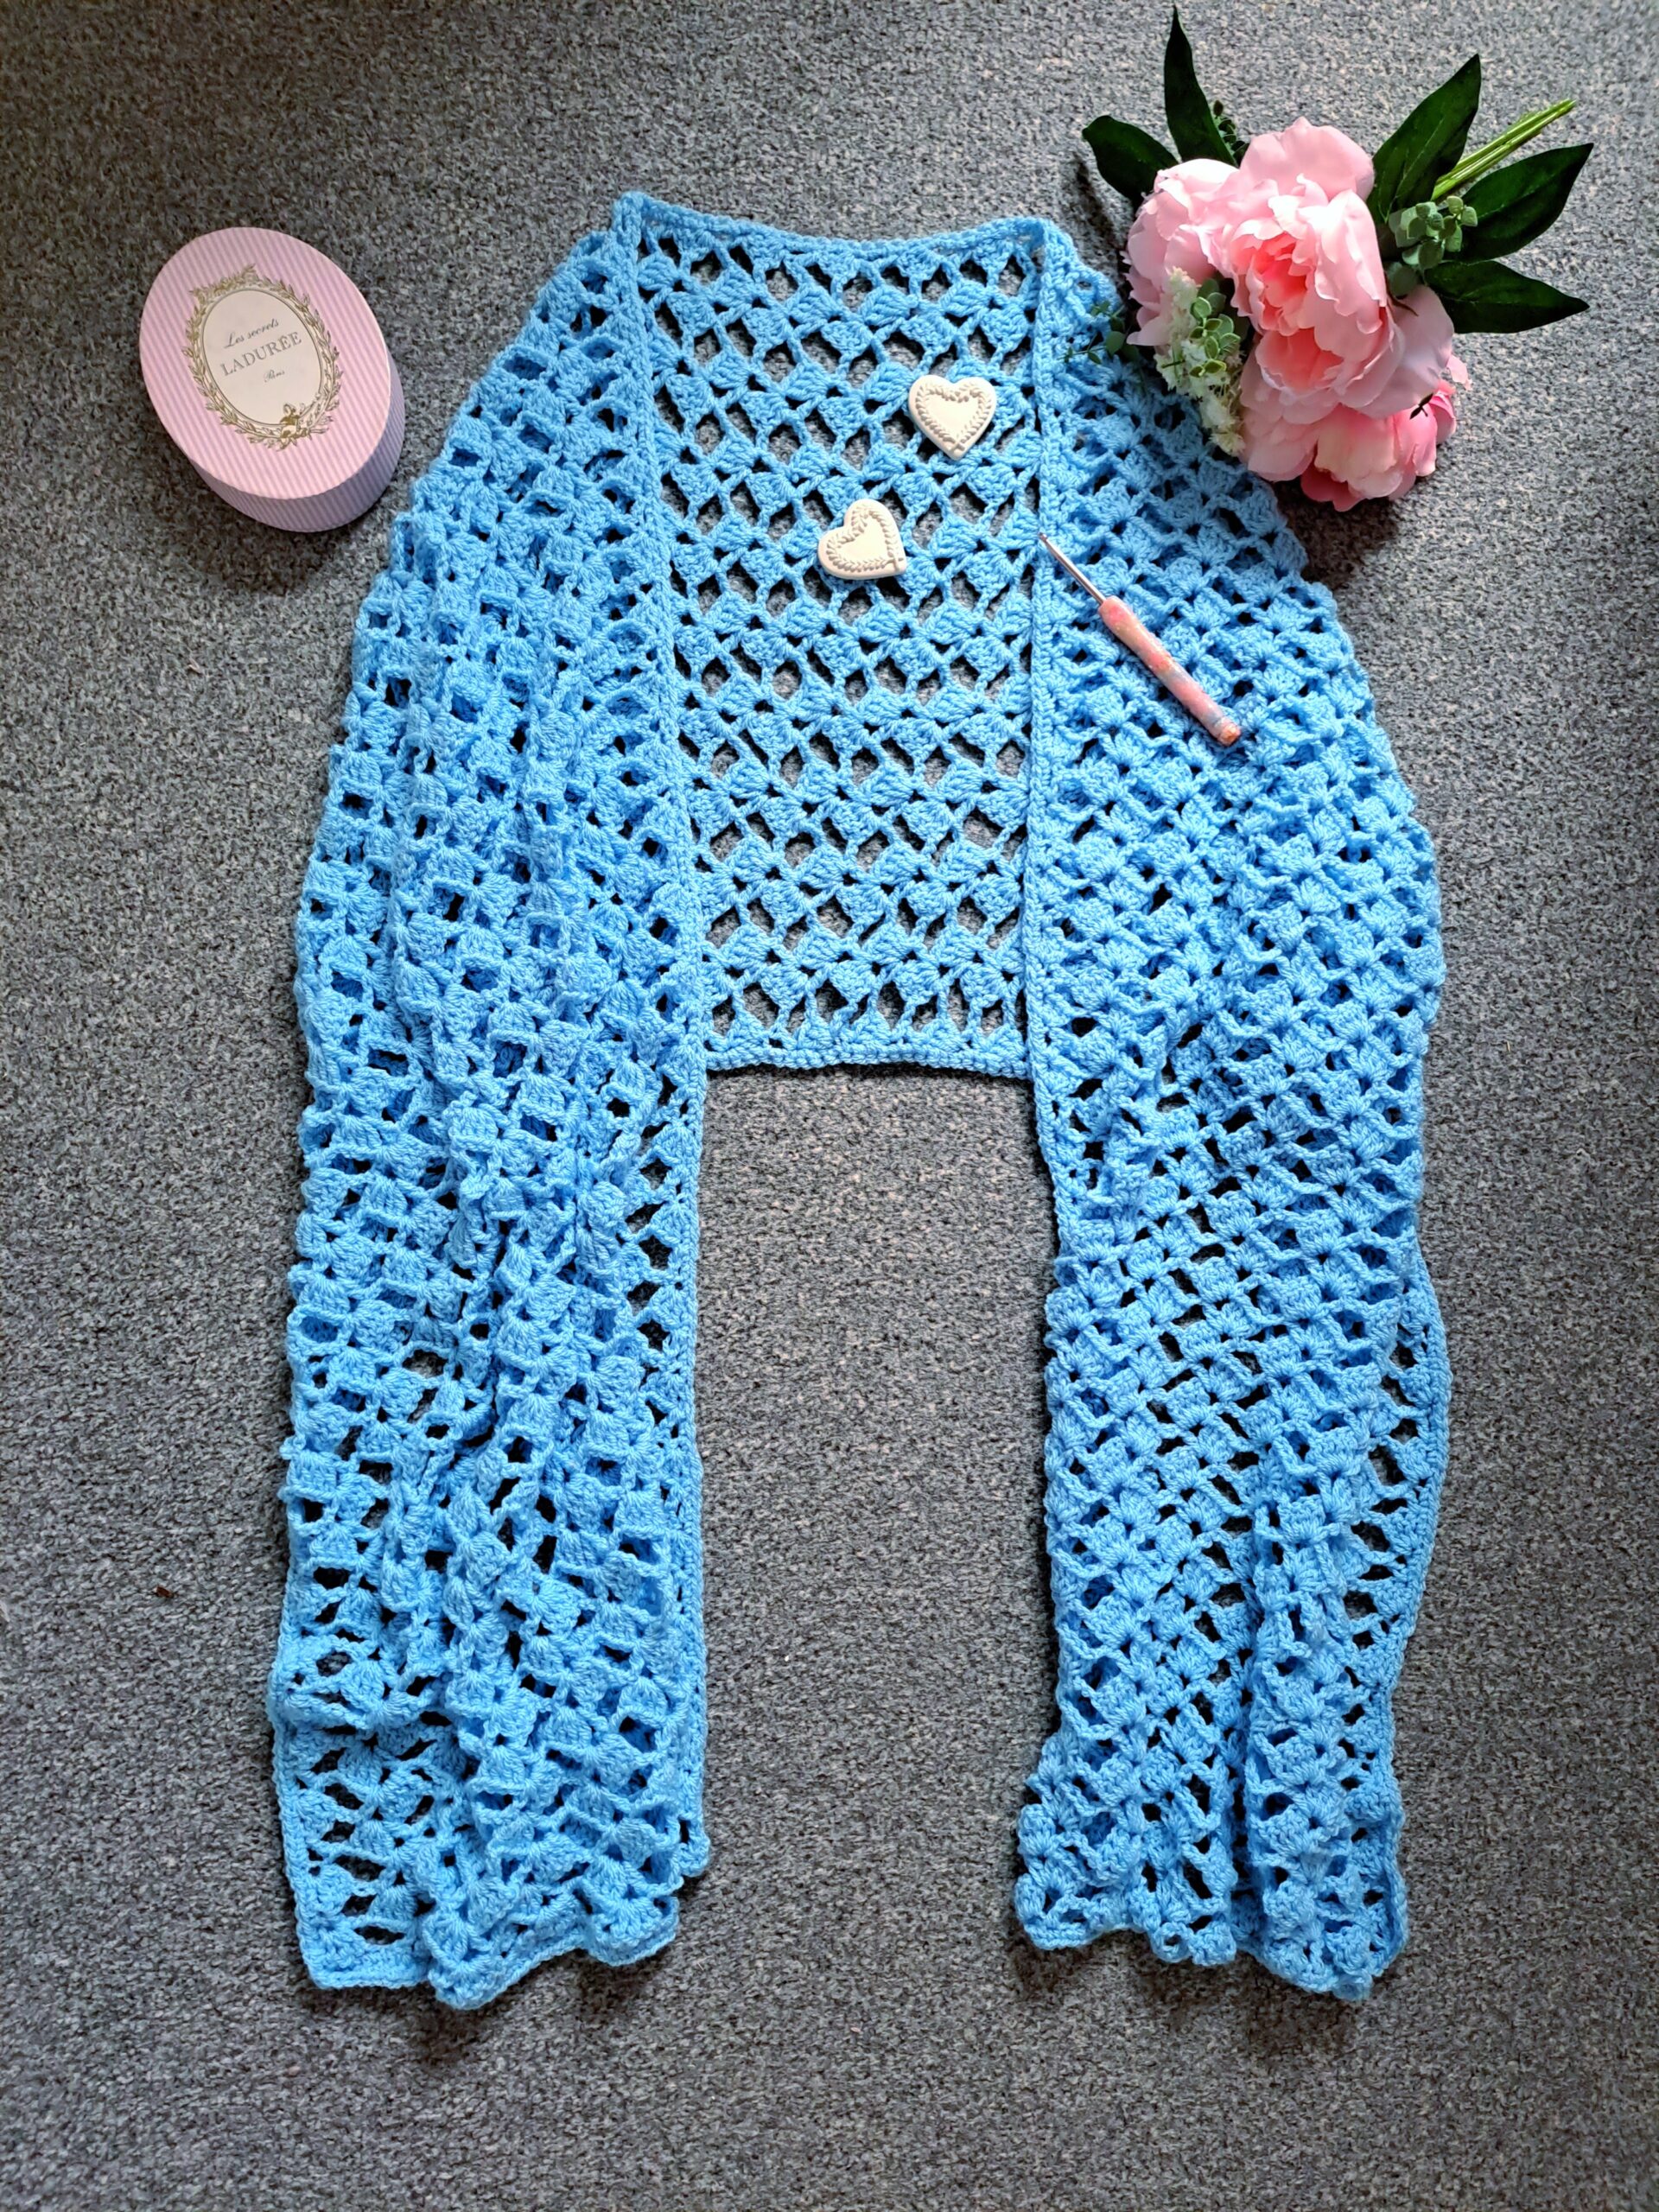 Crochet The Juliette Shawl Free Pattern